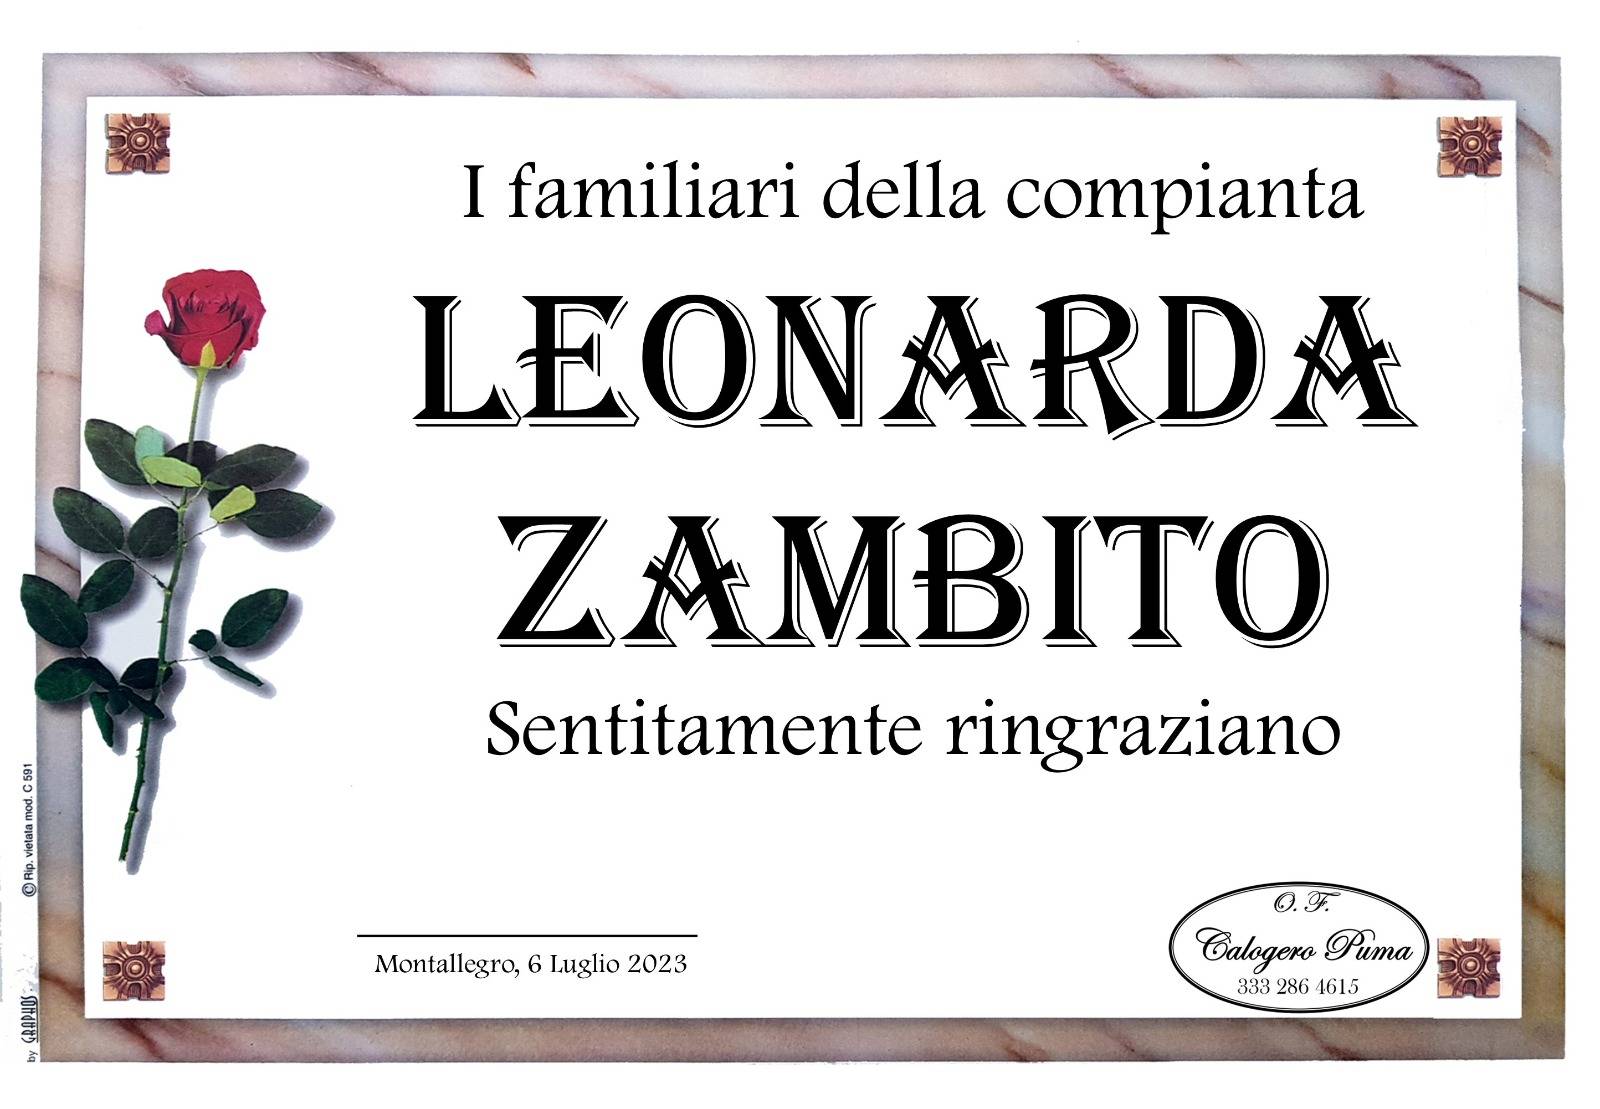 Leonarda Zambito